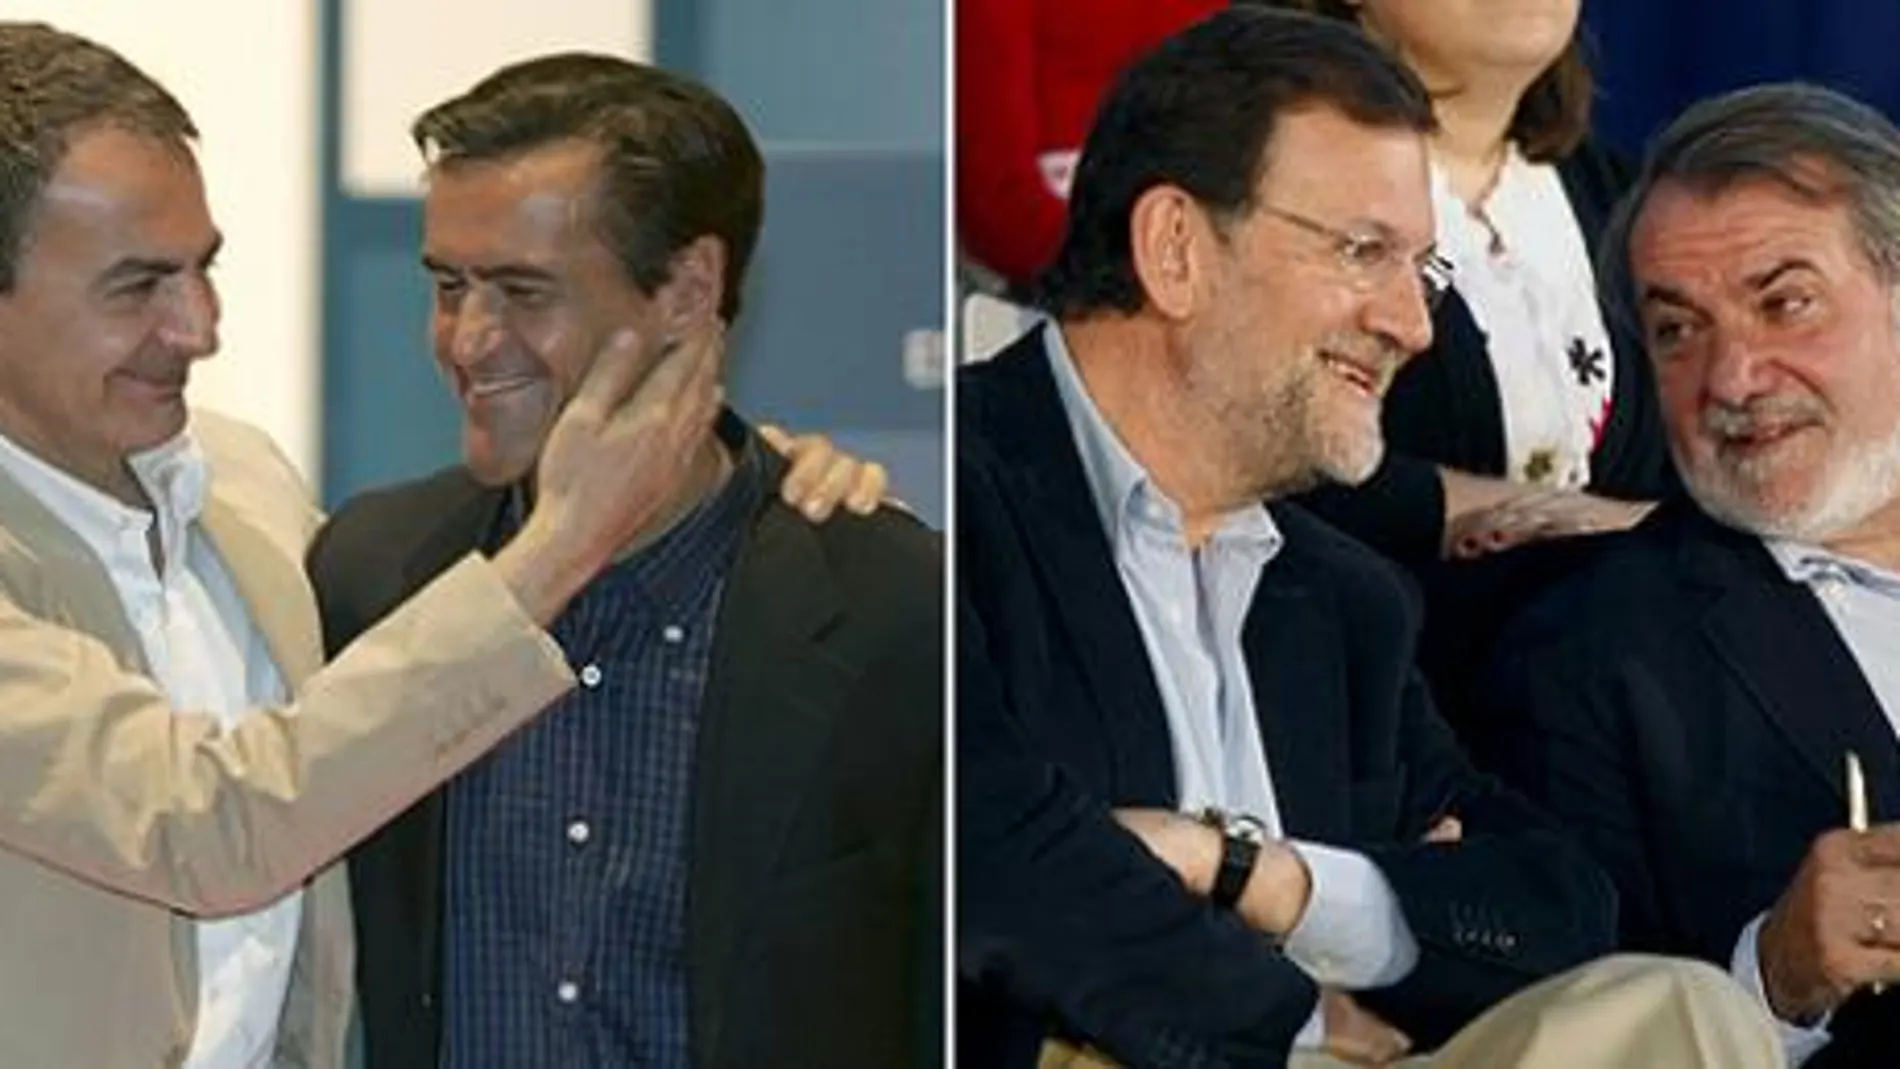 Mayor Oreja votará en Vitoria, López Aguilar en Las Palmas, y Zapatero y Rajoy en Madrid